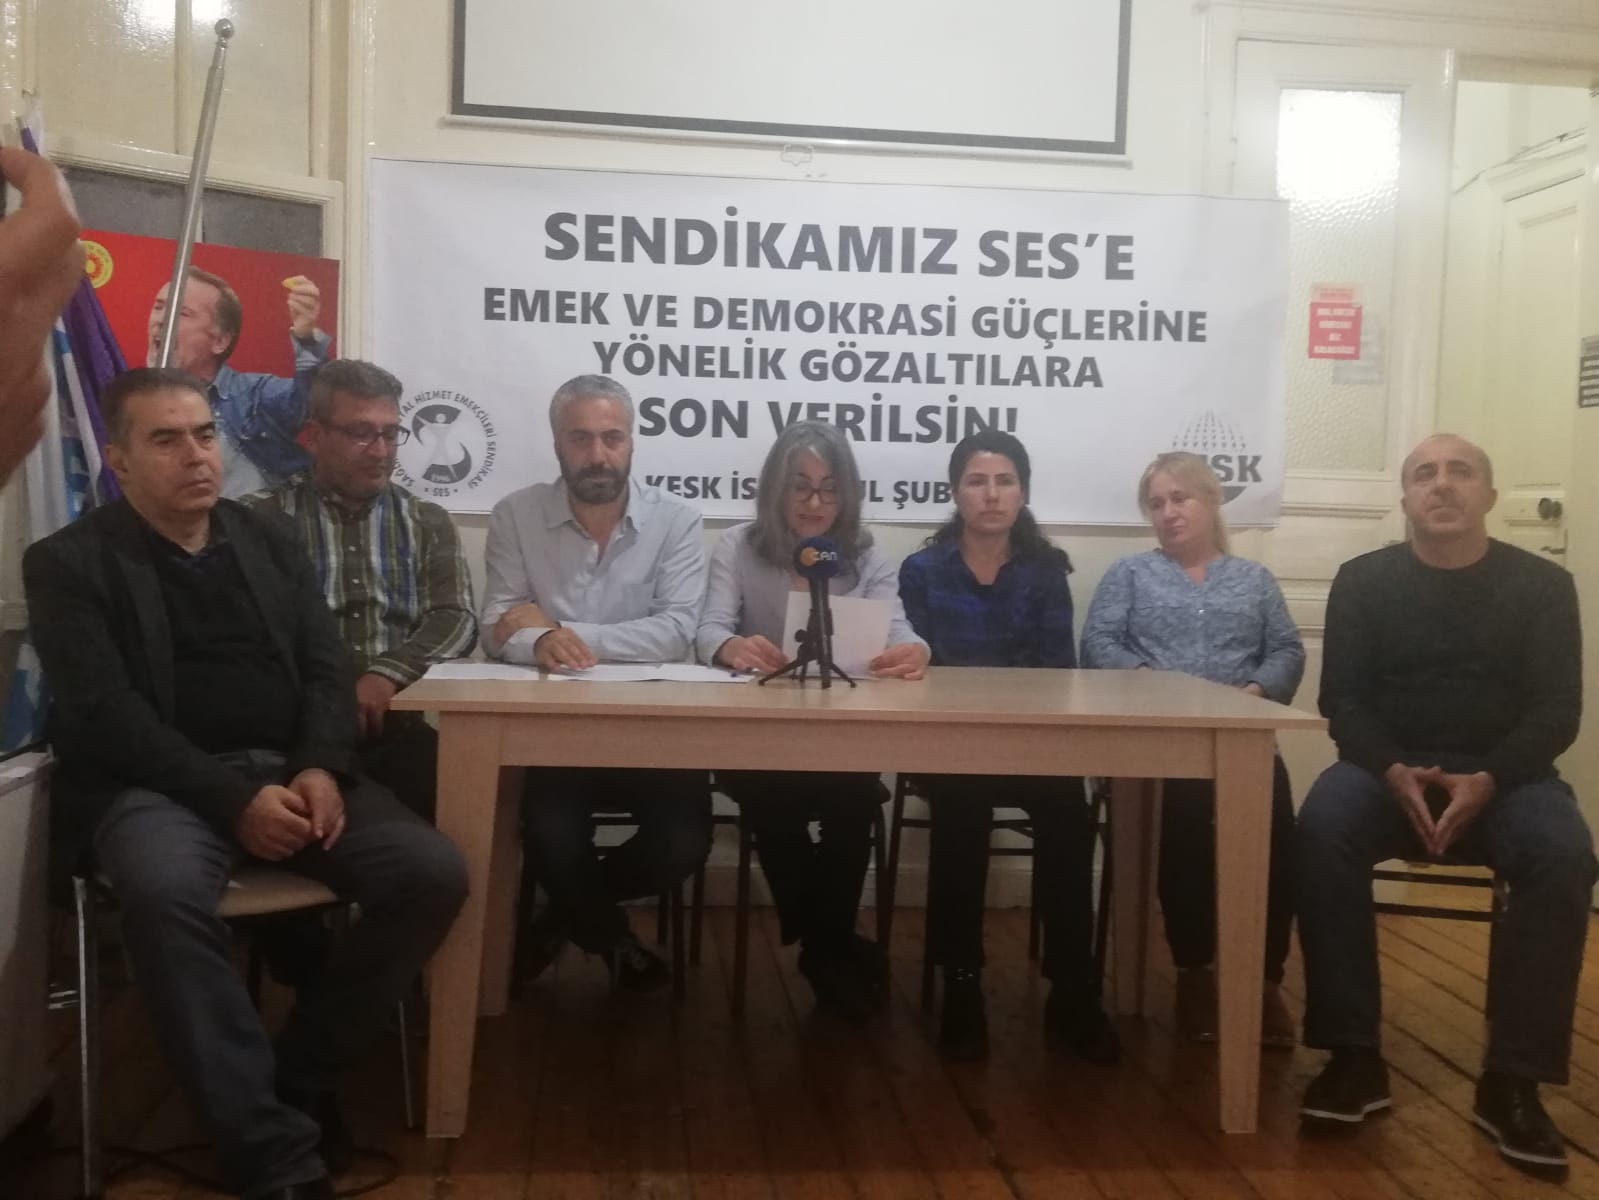 KESK İstanbul Şubeler Platformu: Sendikamız SES'e, Emek ve Demokrasi Güçlerine Yönelik Gözaltılara Son Verilsin